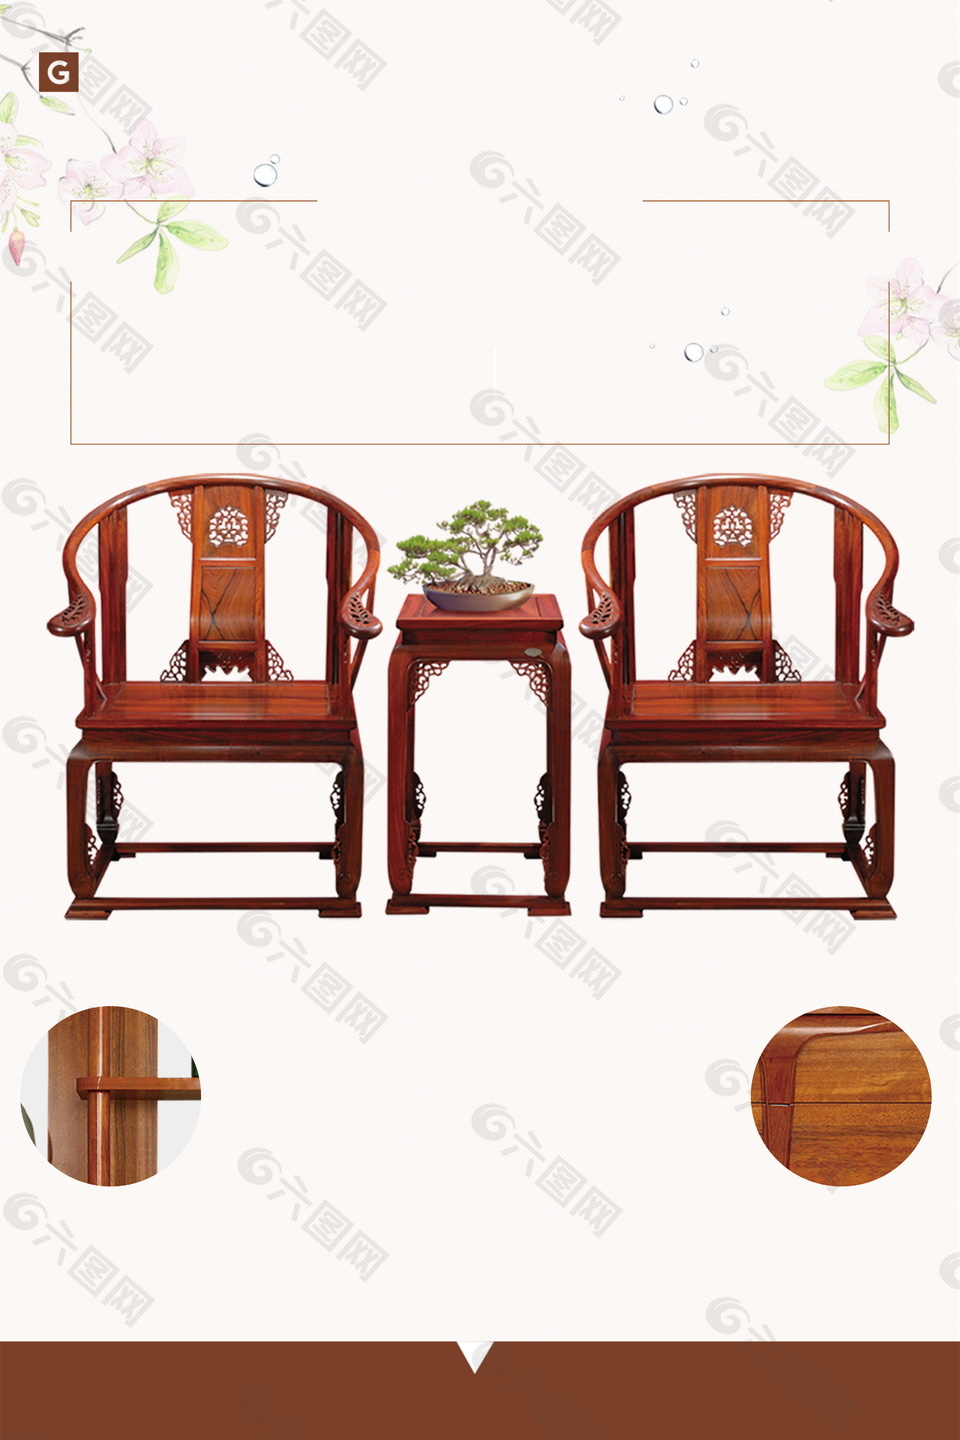 中式雅致褐色木制桌椅广告背景